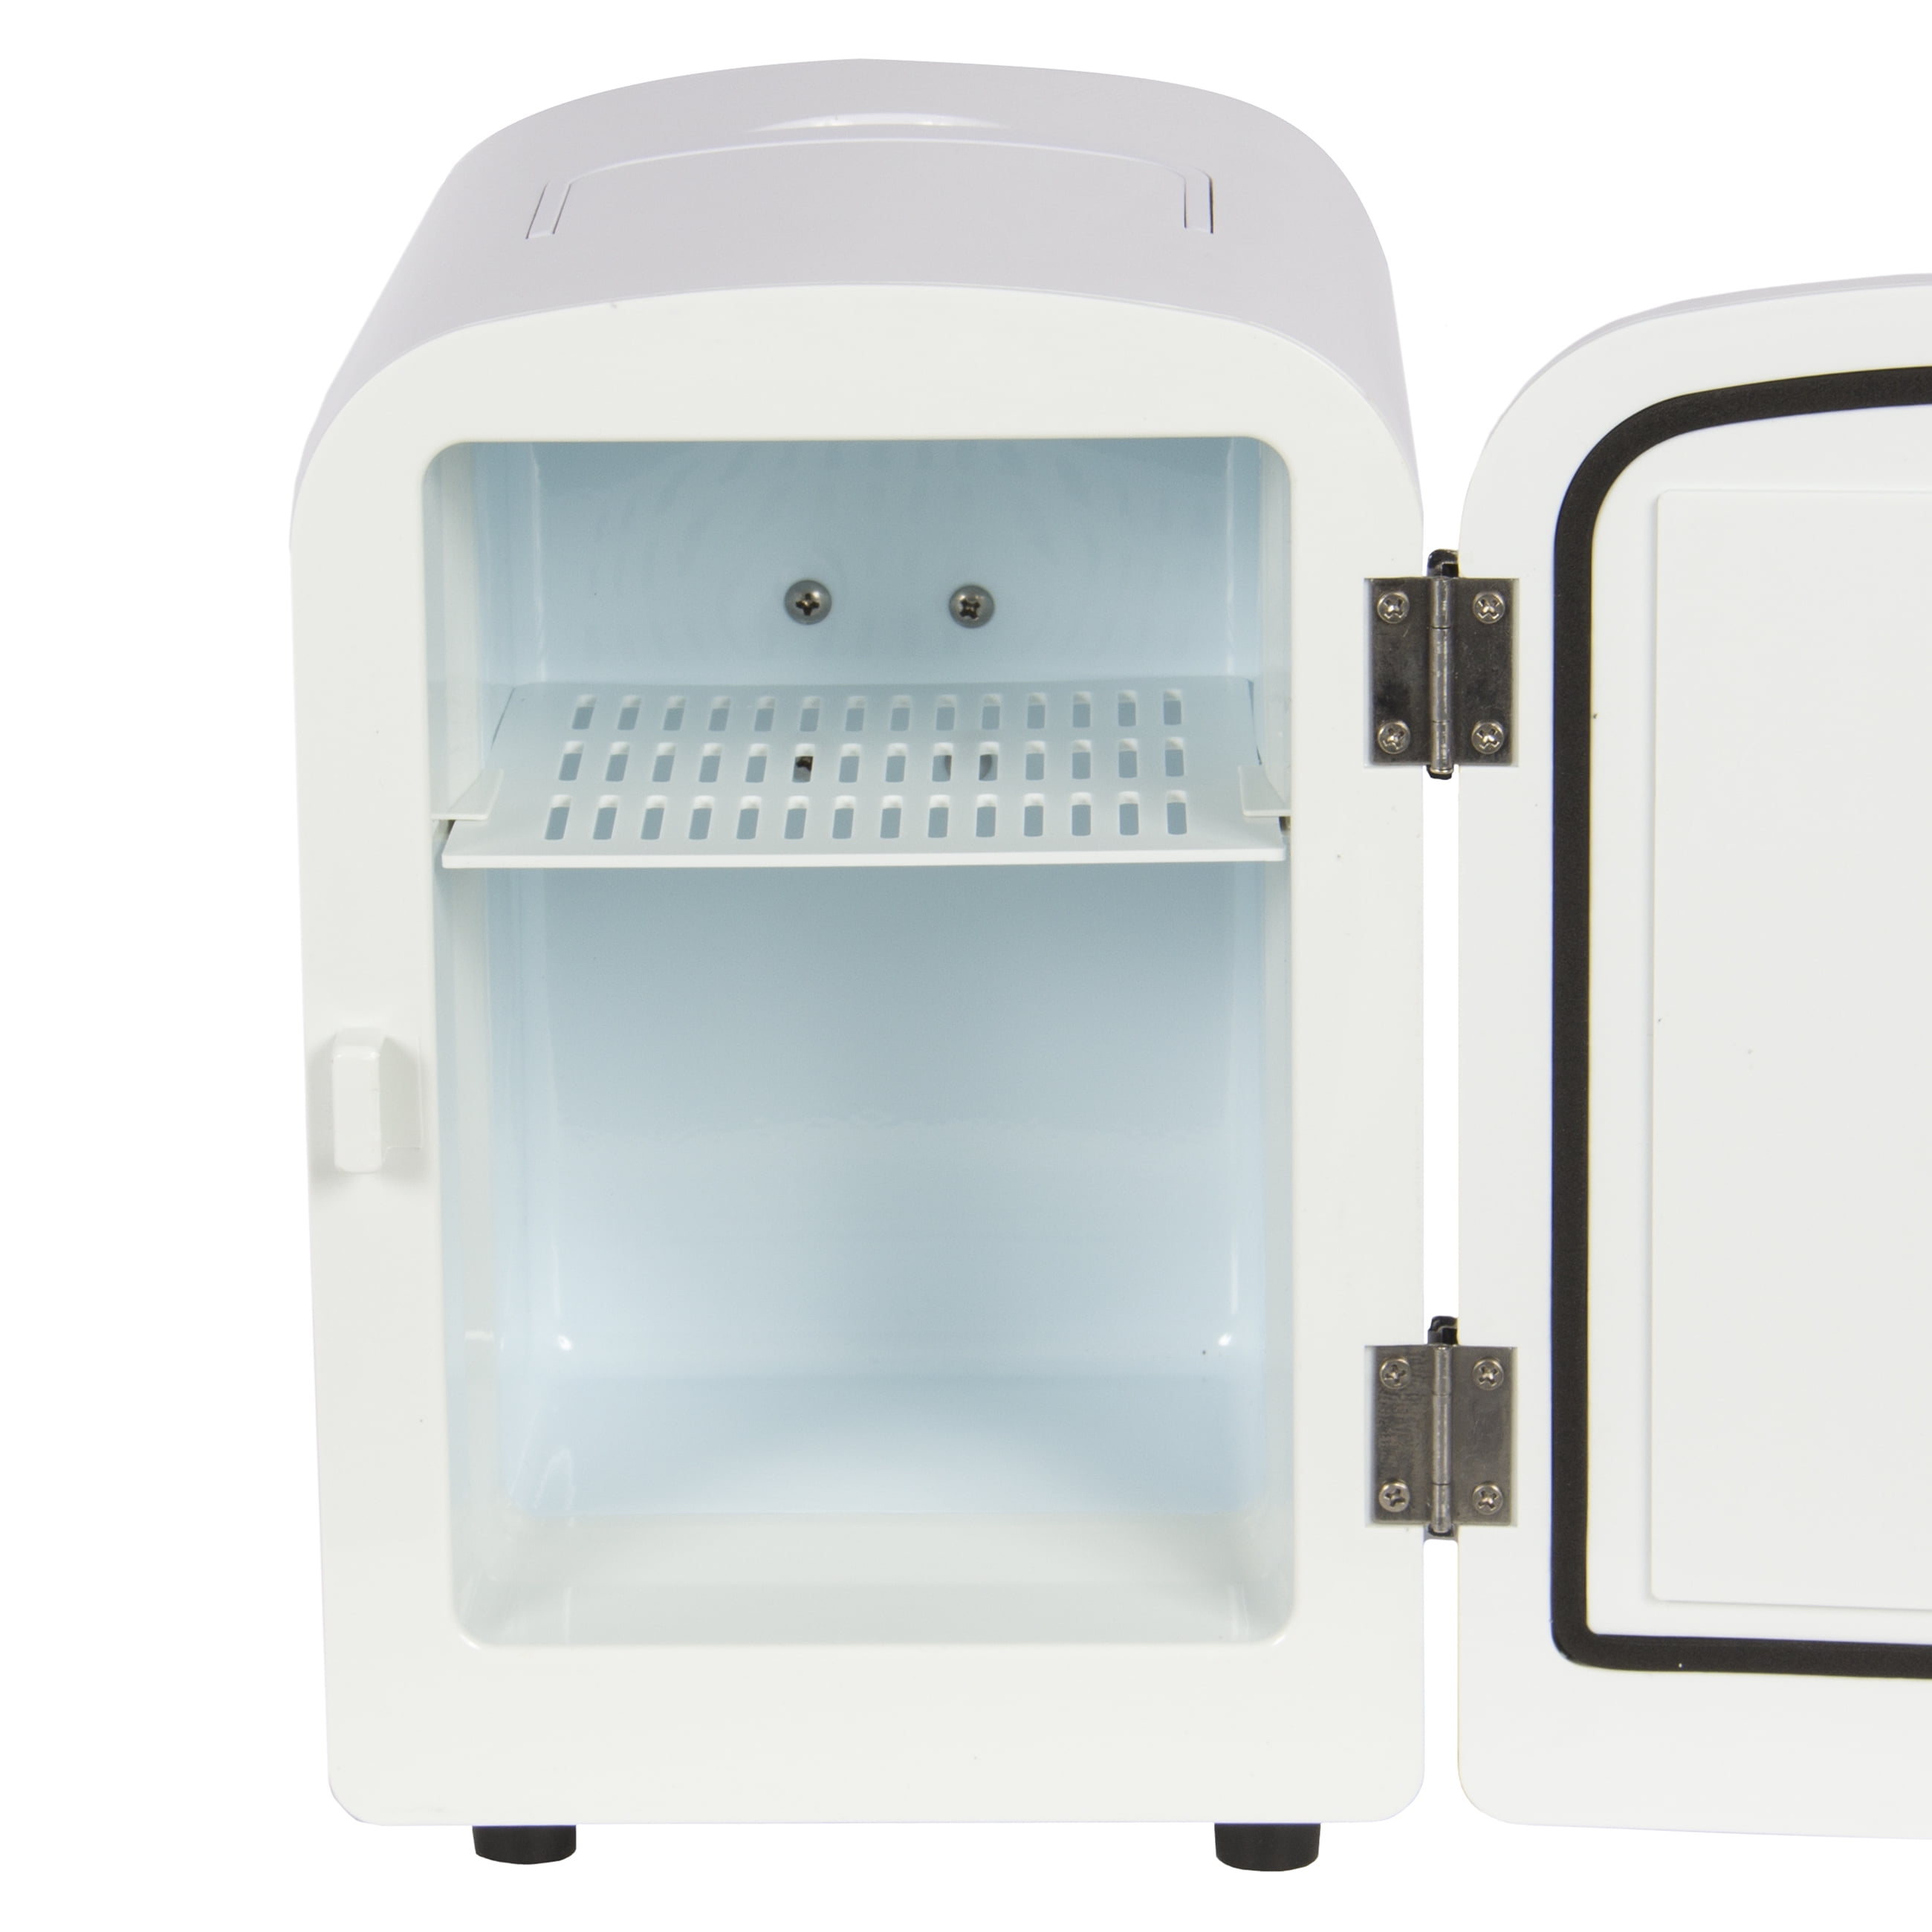 portable mini fridge cooler